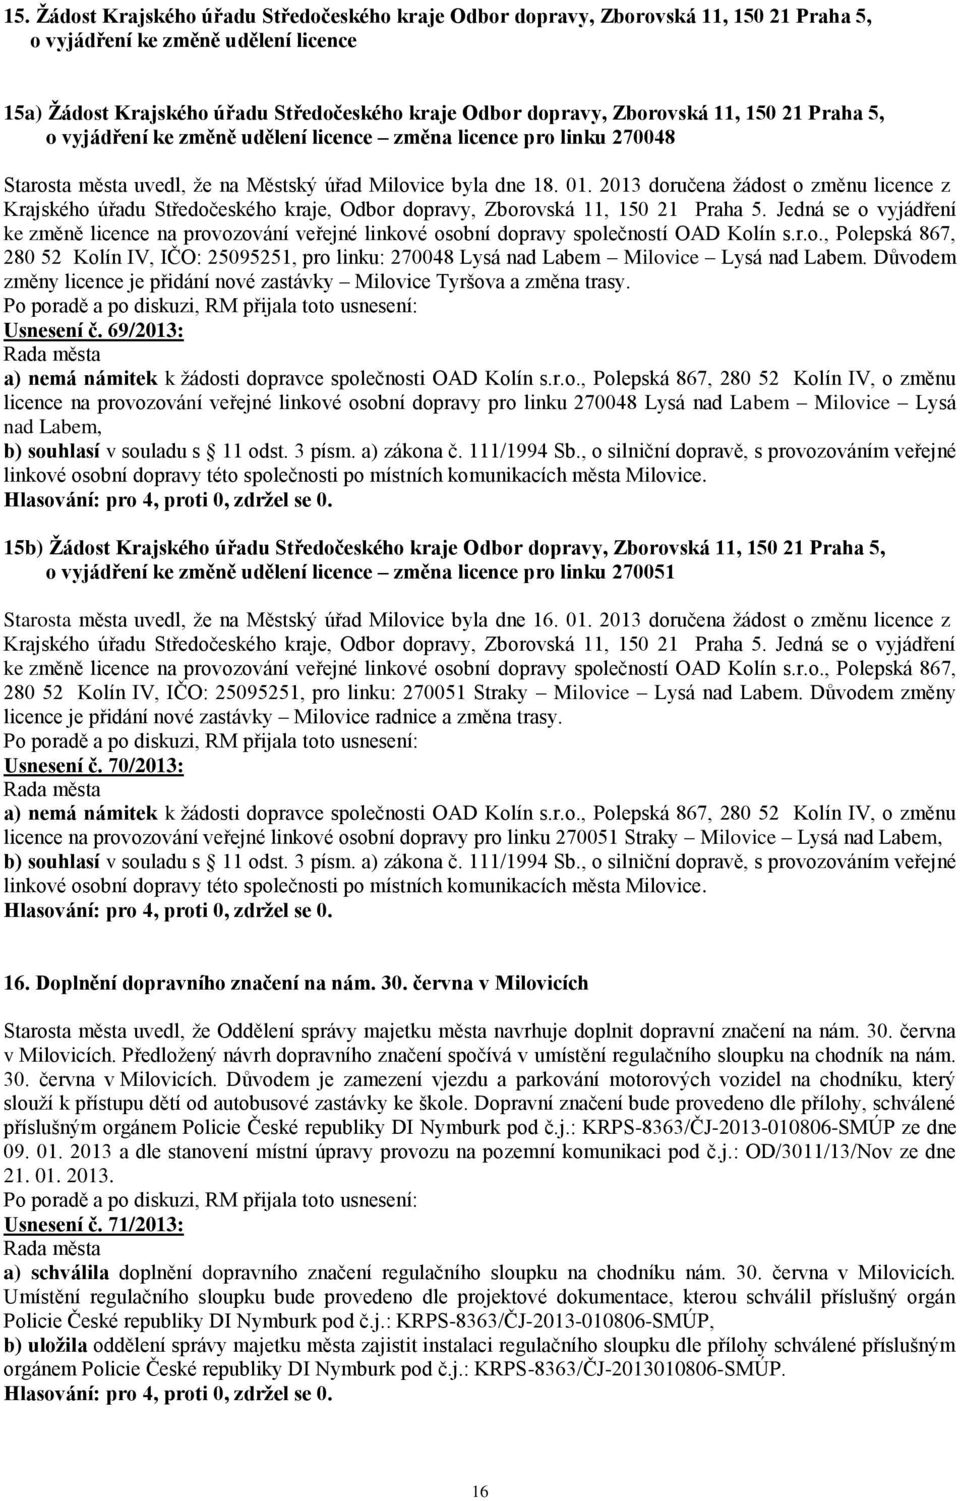 2013 doručena žádost o změnu licence z Krajského úřadu Středočeského kraje, Odbor dopravy, Zborovská 11, 150 21 Praha 5.